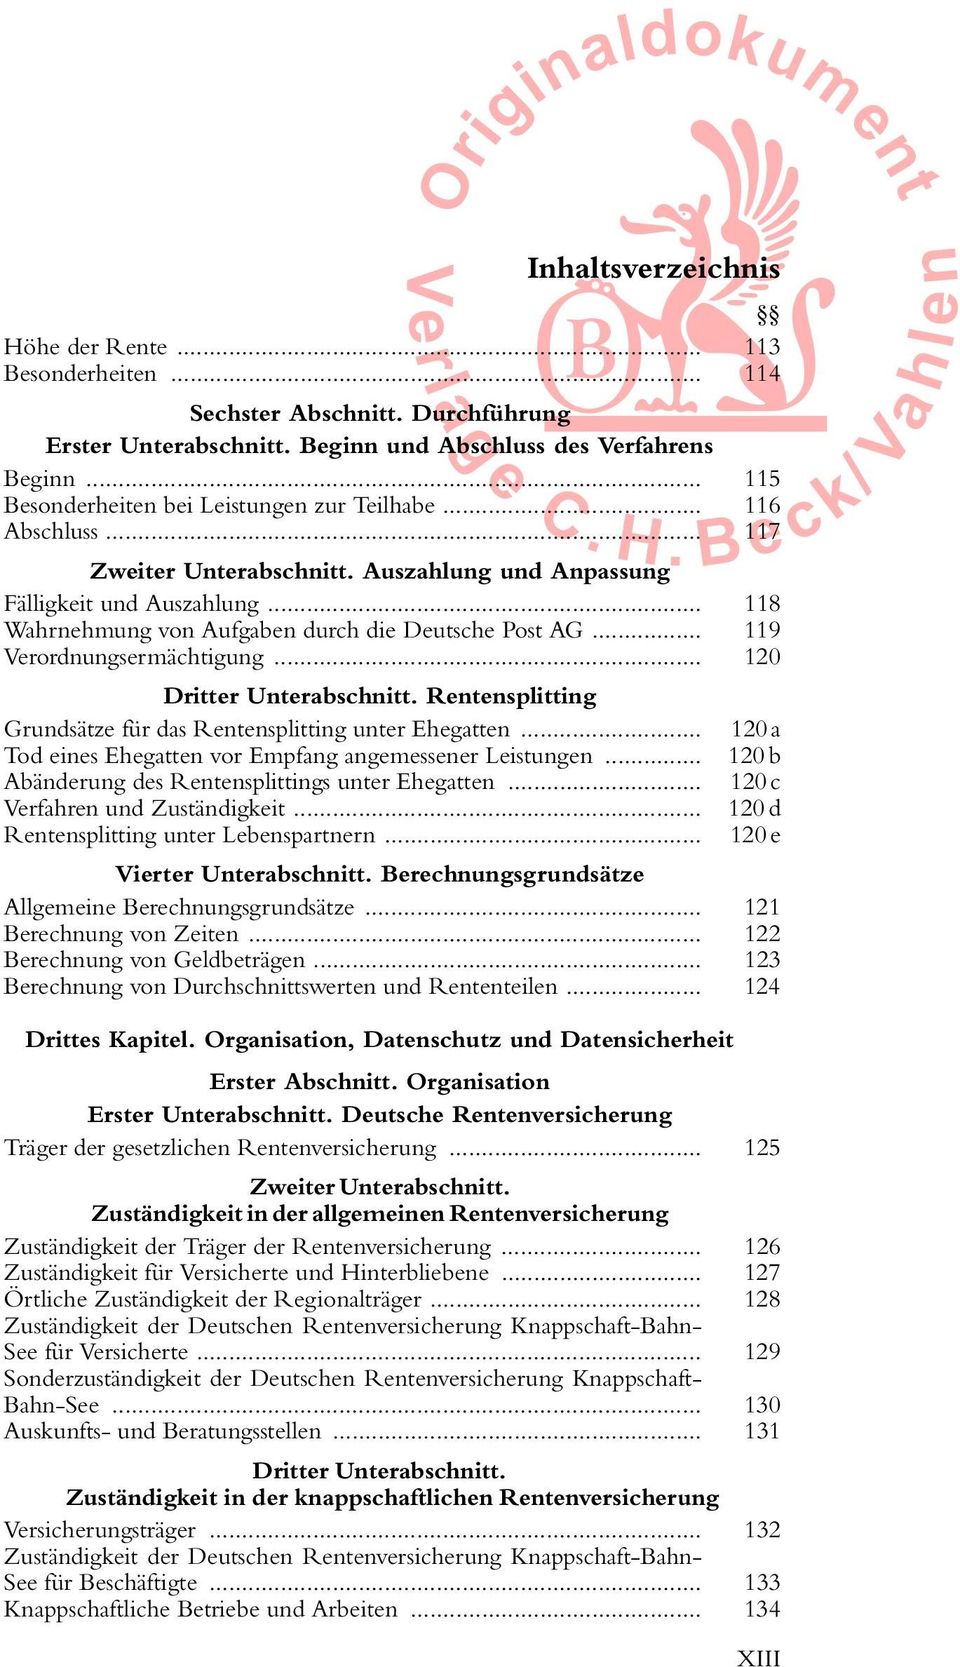 .. 118 Wahrnehmung von Aufgaben durch die Deutsche Post AG... 119 Verordnungsermächtigung... 120 Dritter Unterabschnitt. Rentensplitting Grundsätze für das Rentensplitting unter Ehegatten.